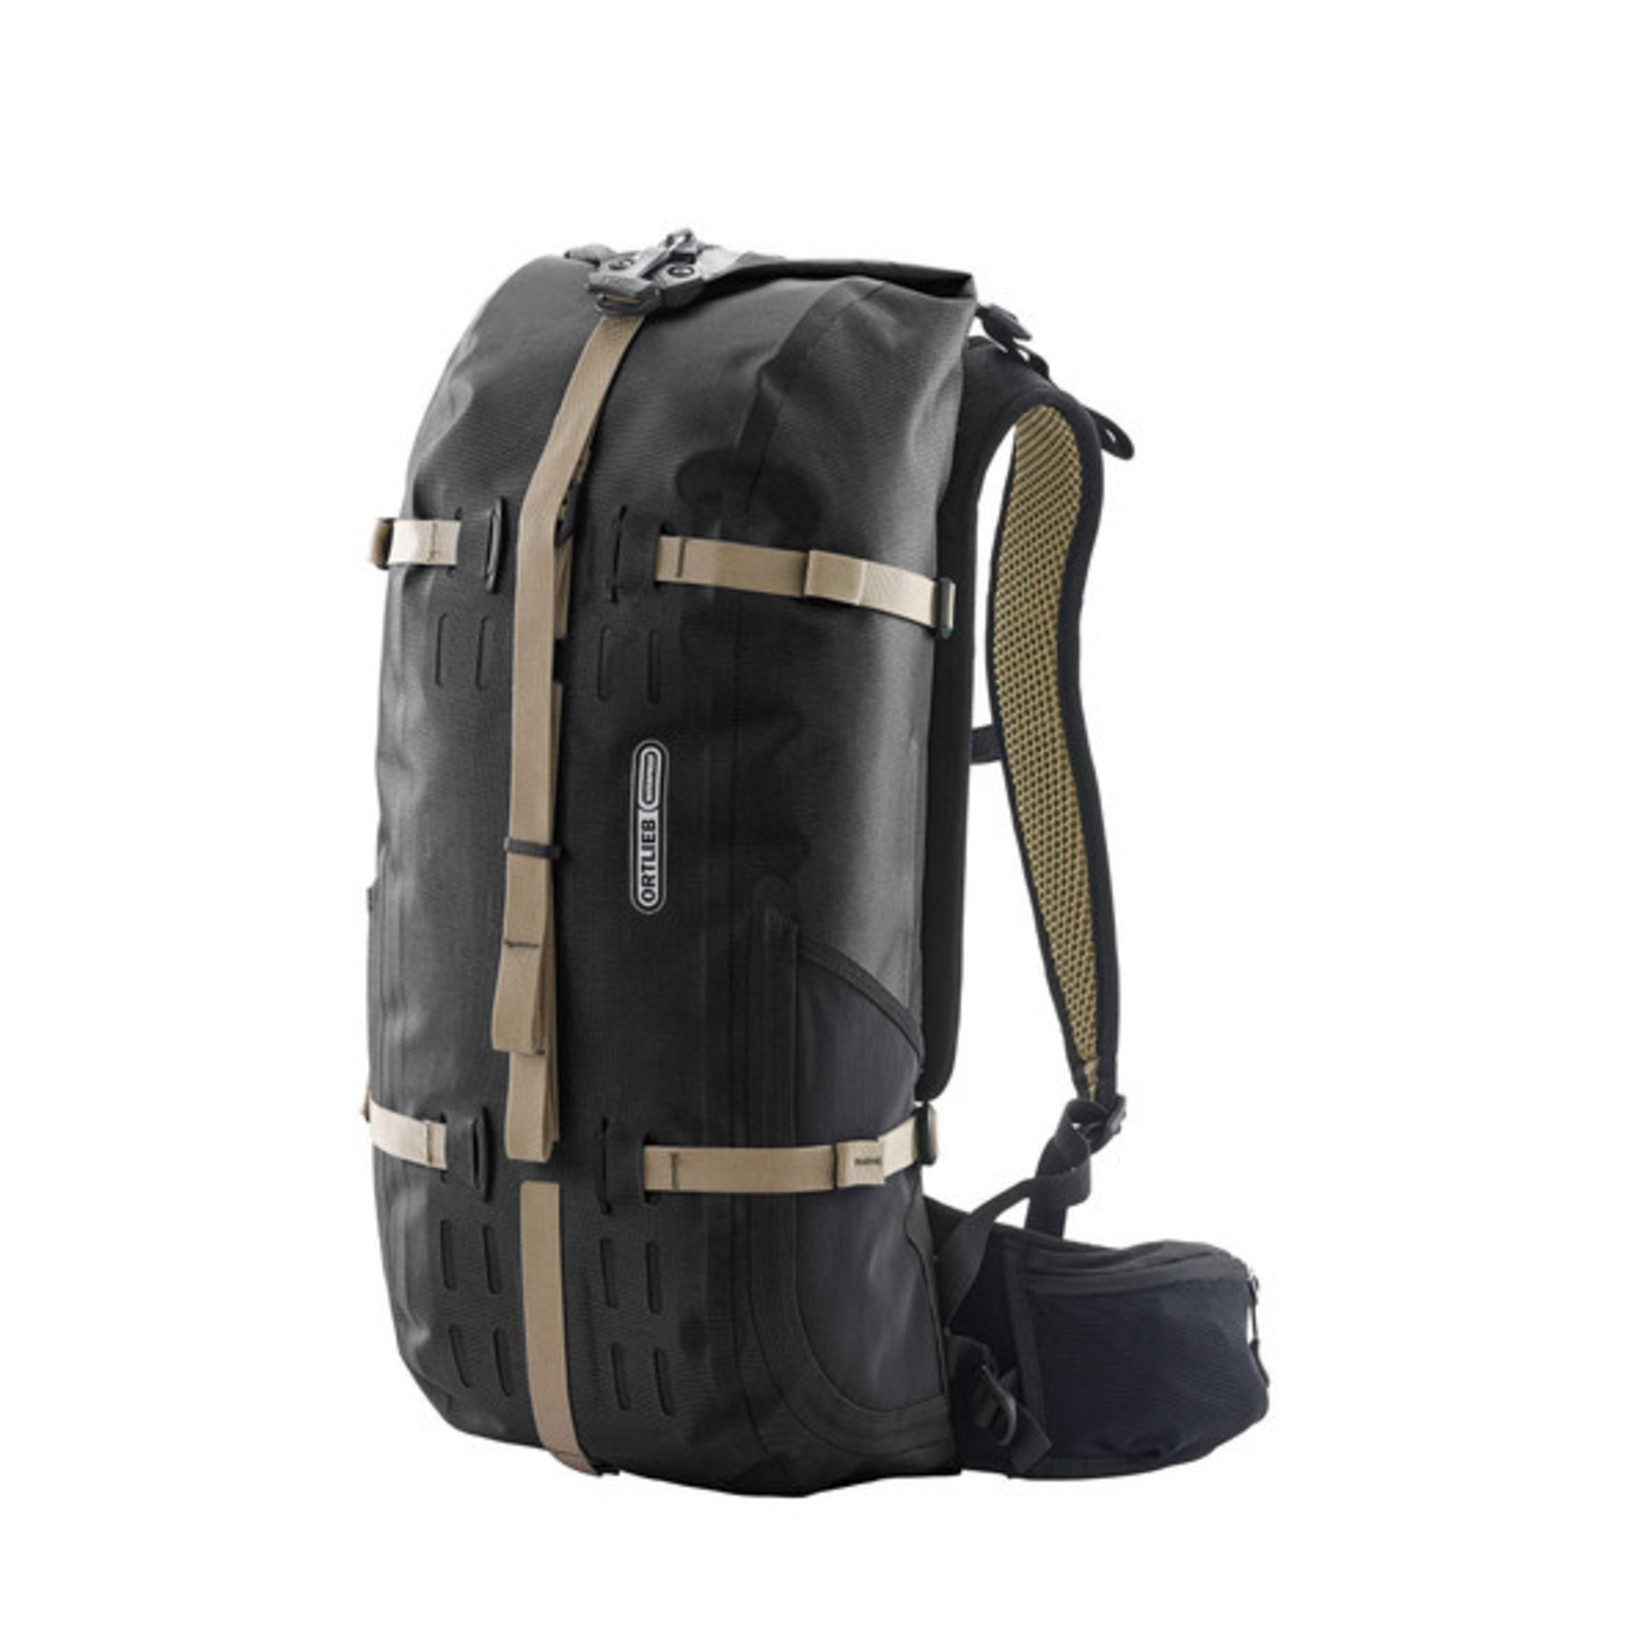 Ortlieb Ortlieb Atrack Waterproof Backpack R7004 - 25L Black